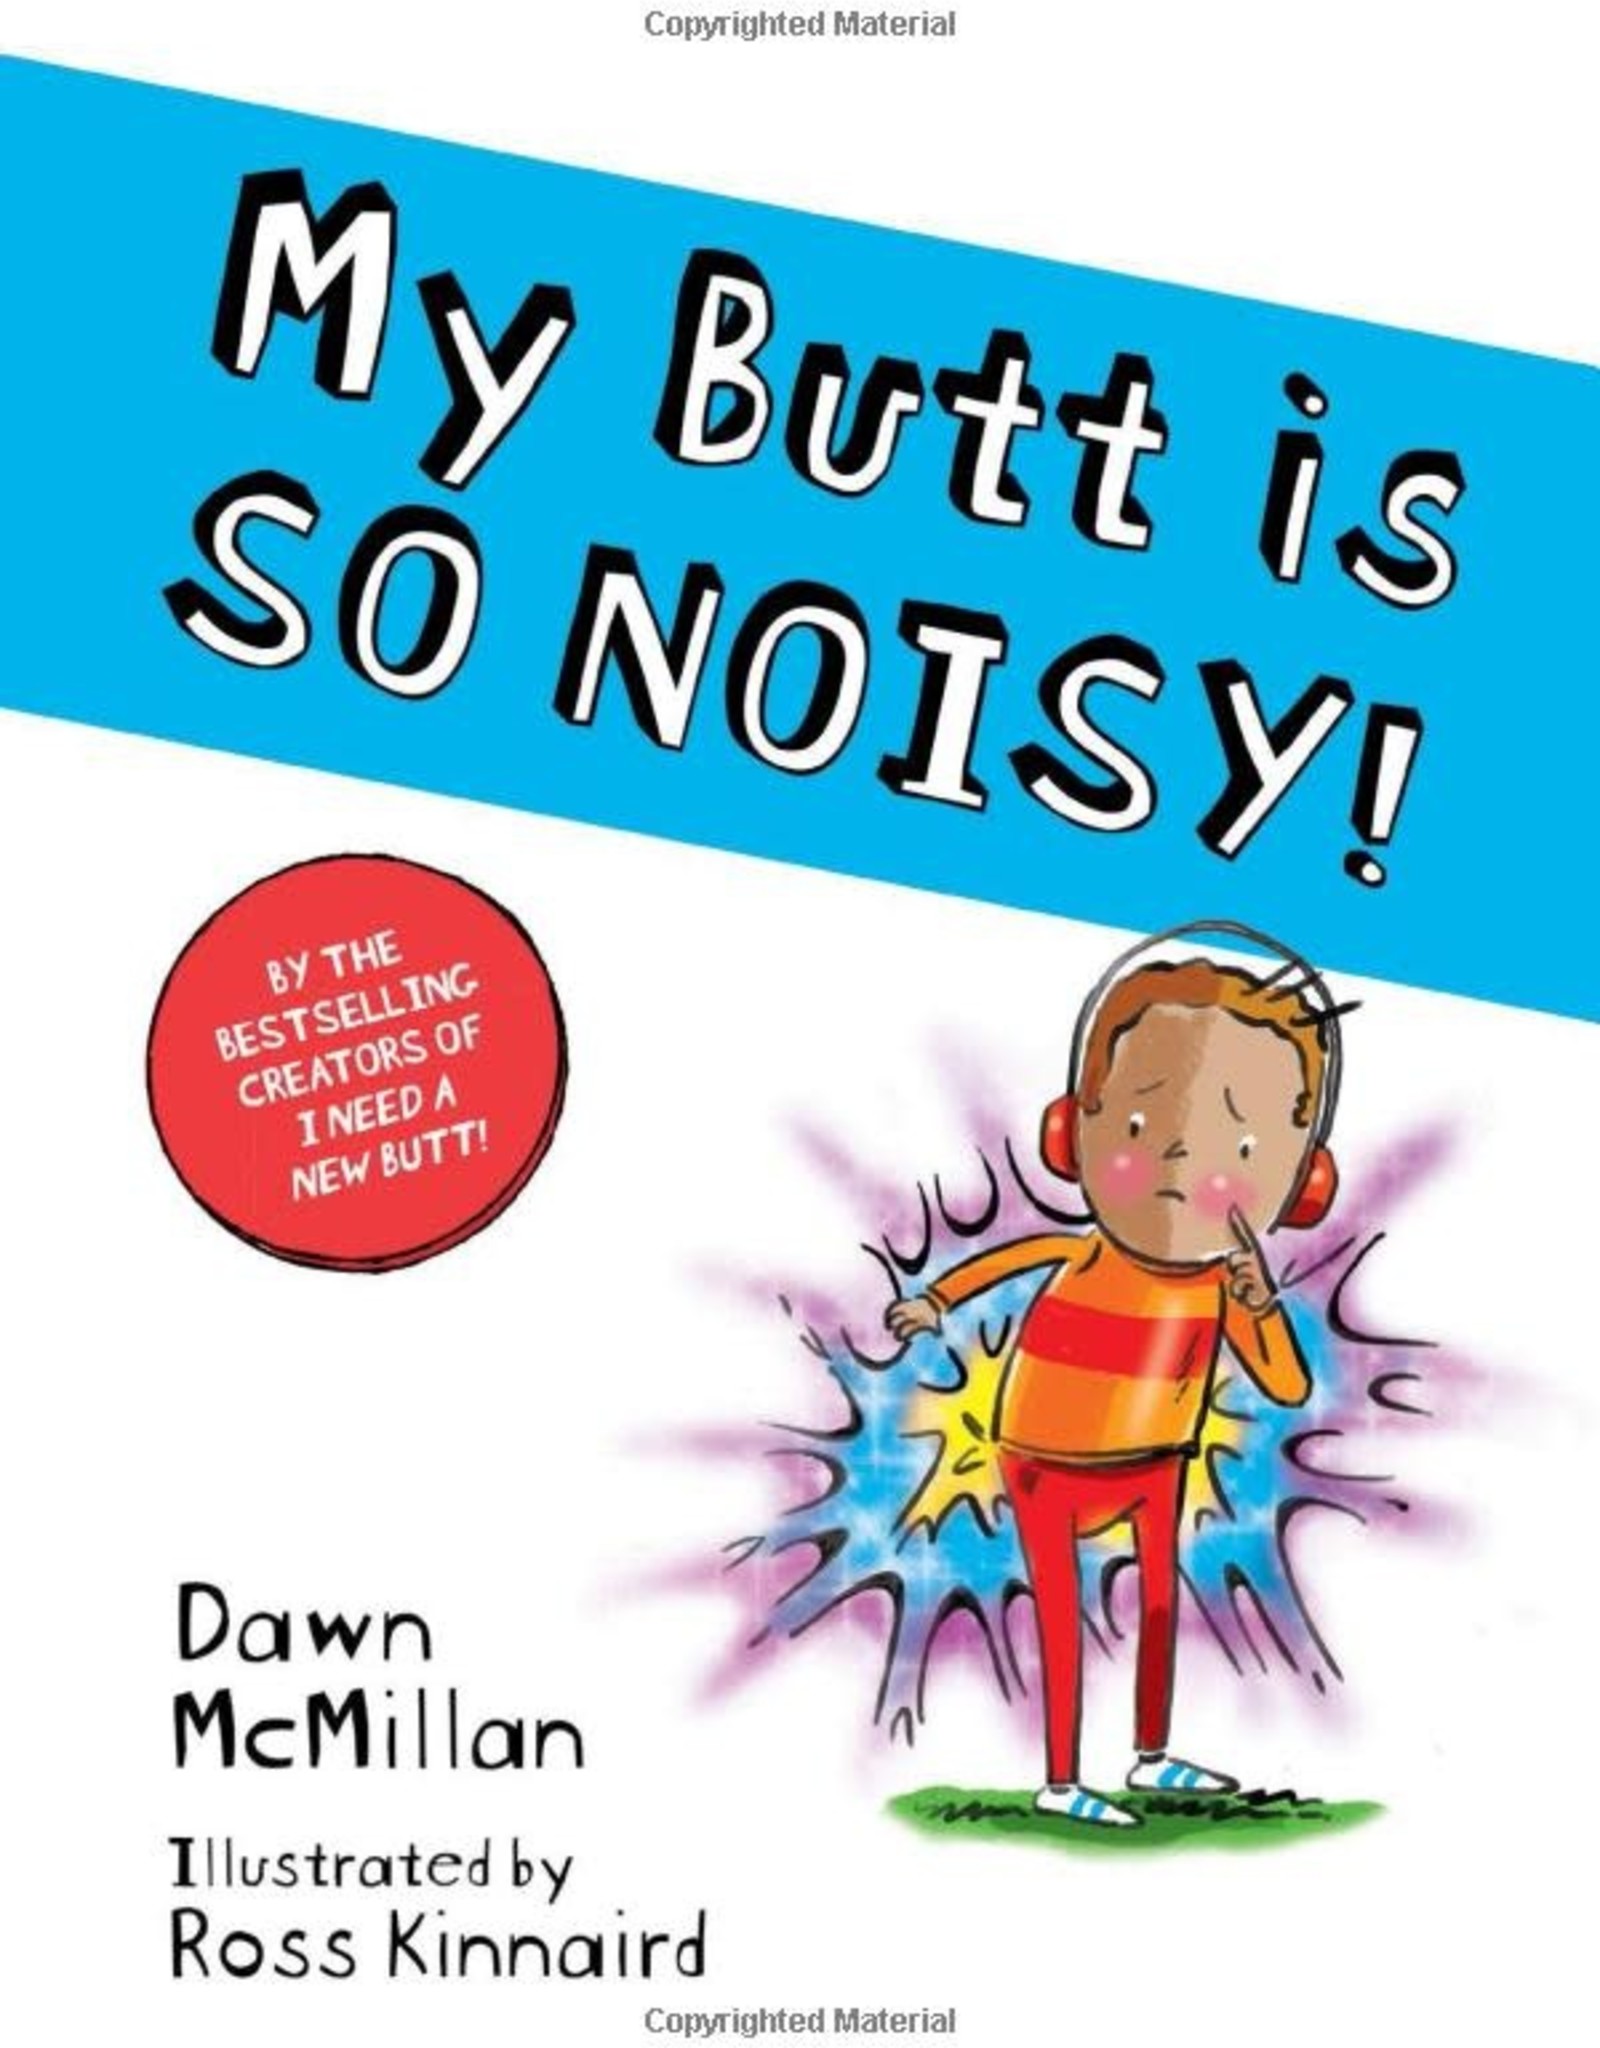 My Butt is So Noisy